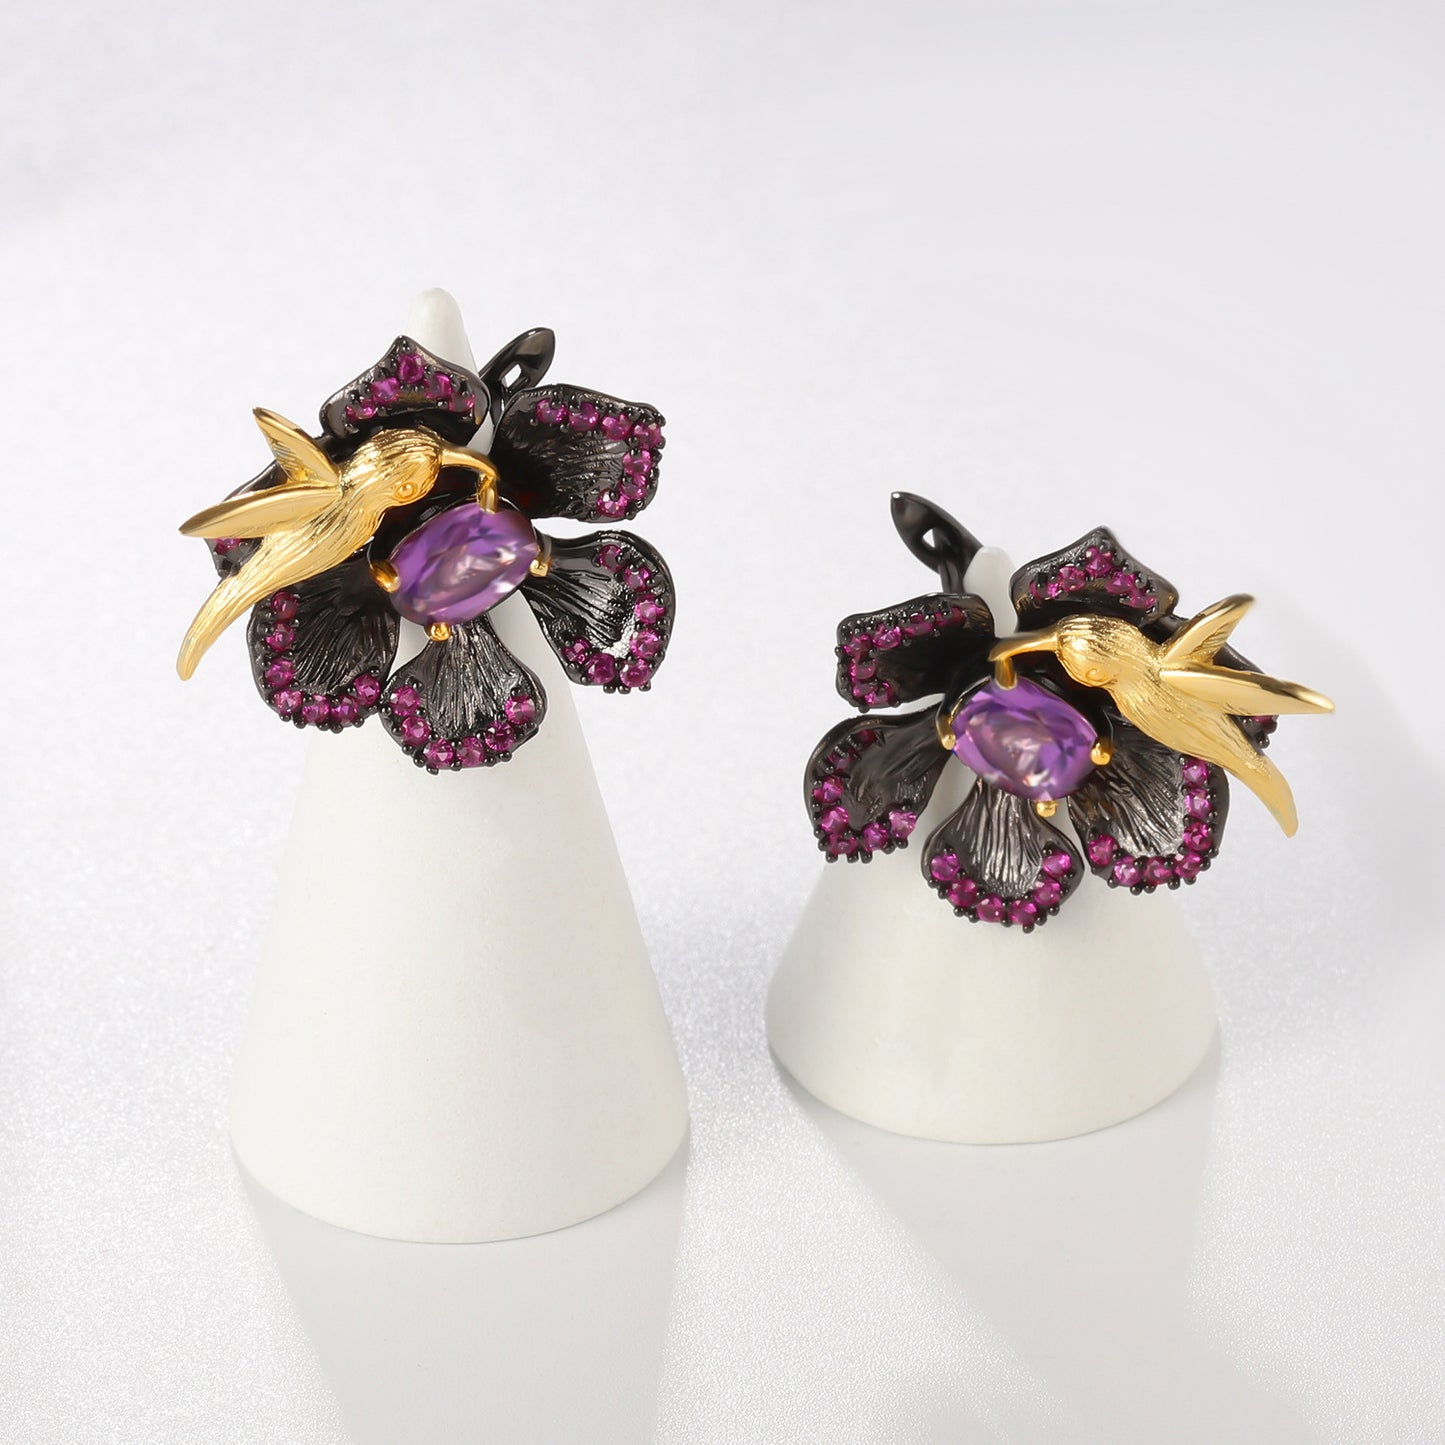 Colourful Gemstones Bird Whispering and Flower Fragrance Design Silver Earrings for Women